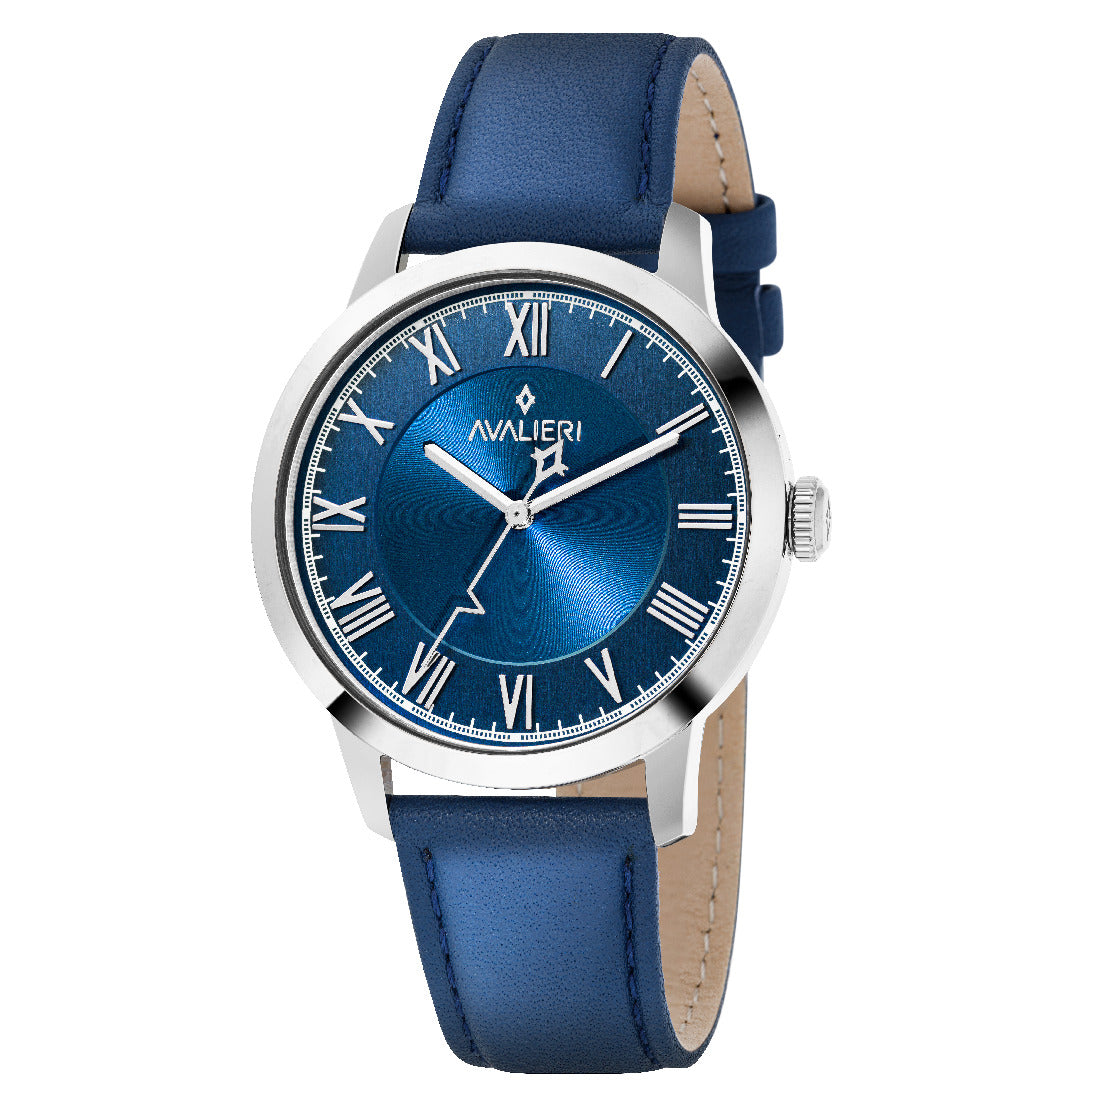 Avalieri Men's Quartz Blue Dial Watch - AV-2546B